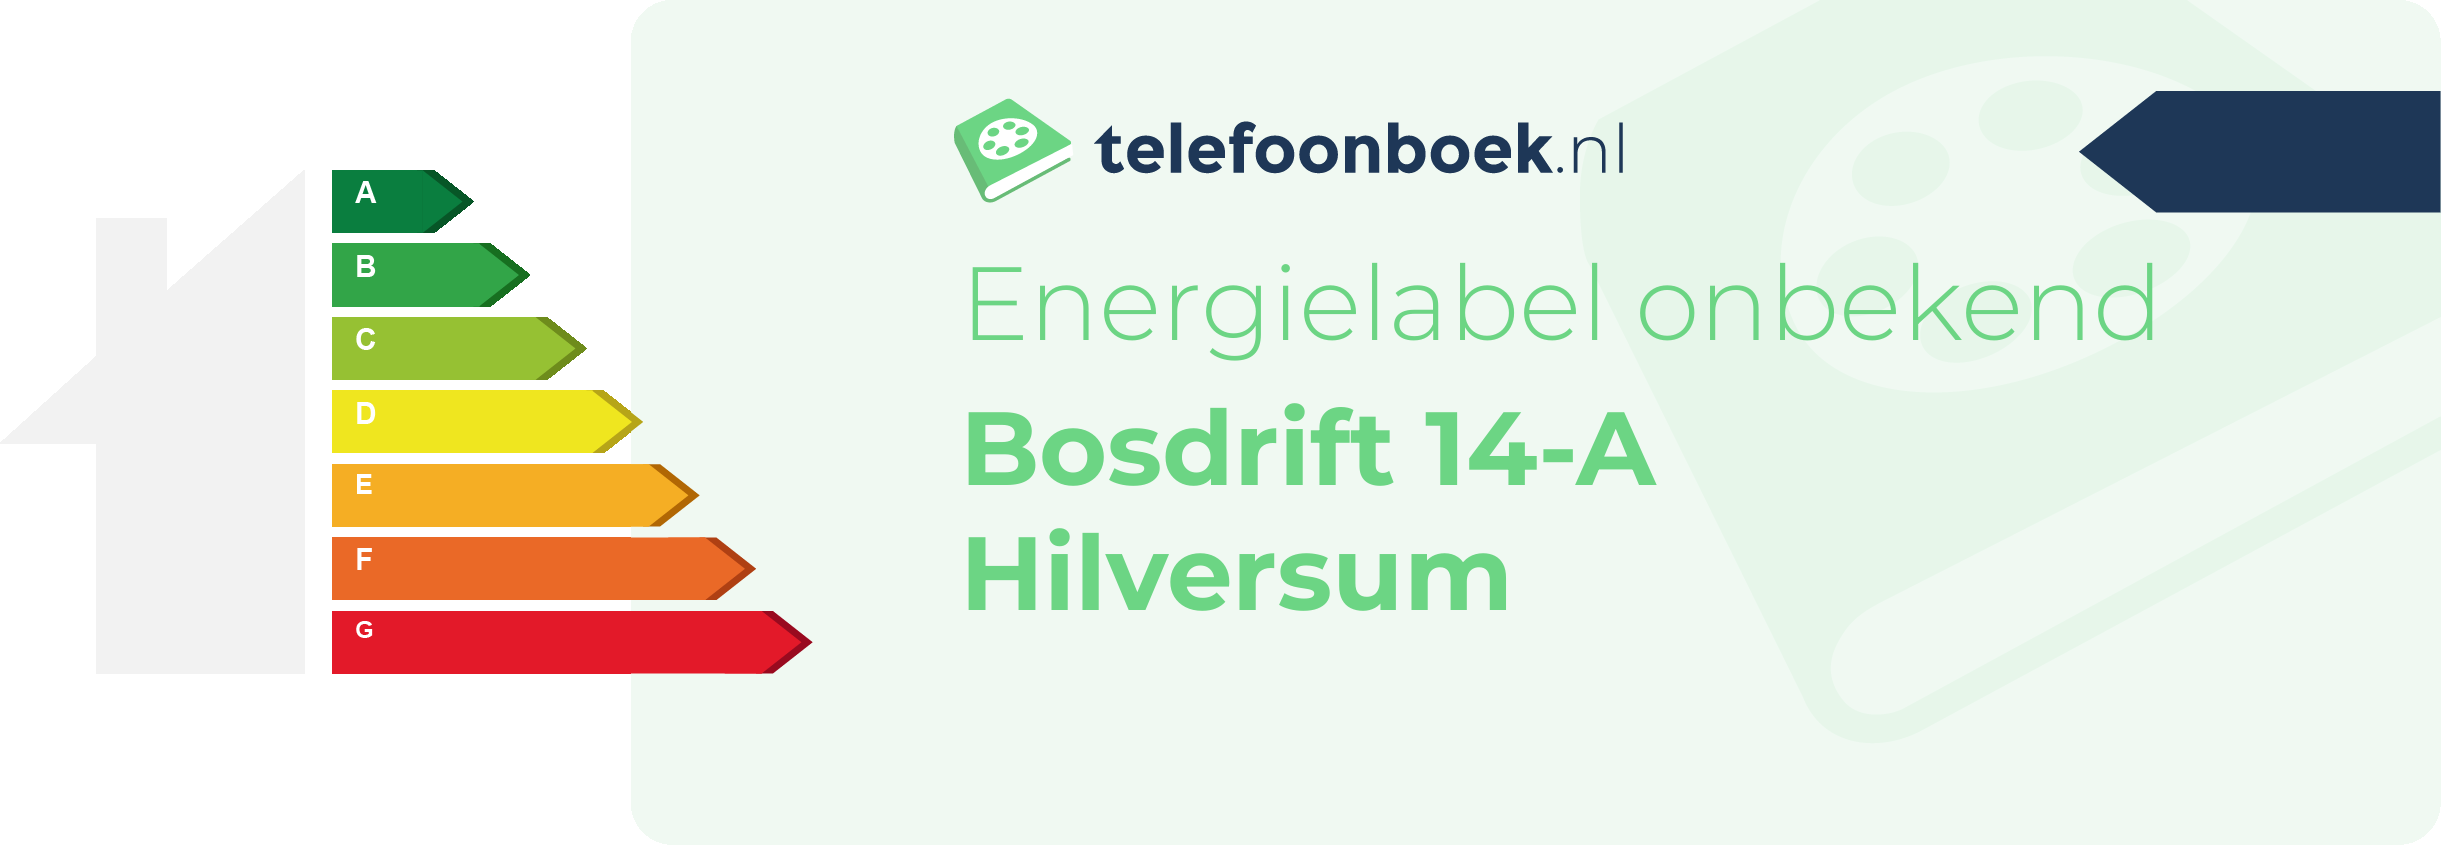 Energielabel Bosdrift 14-A Hilversum